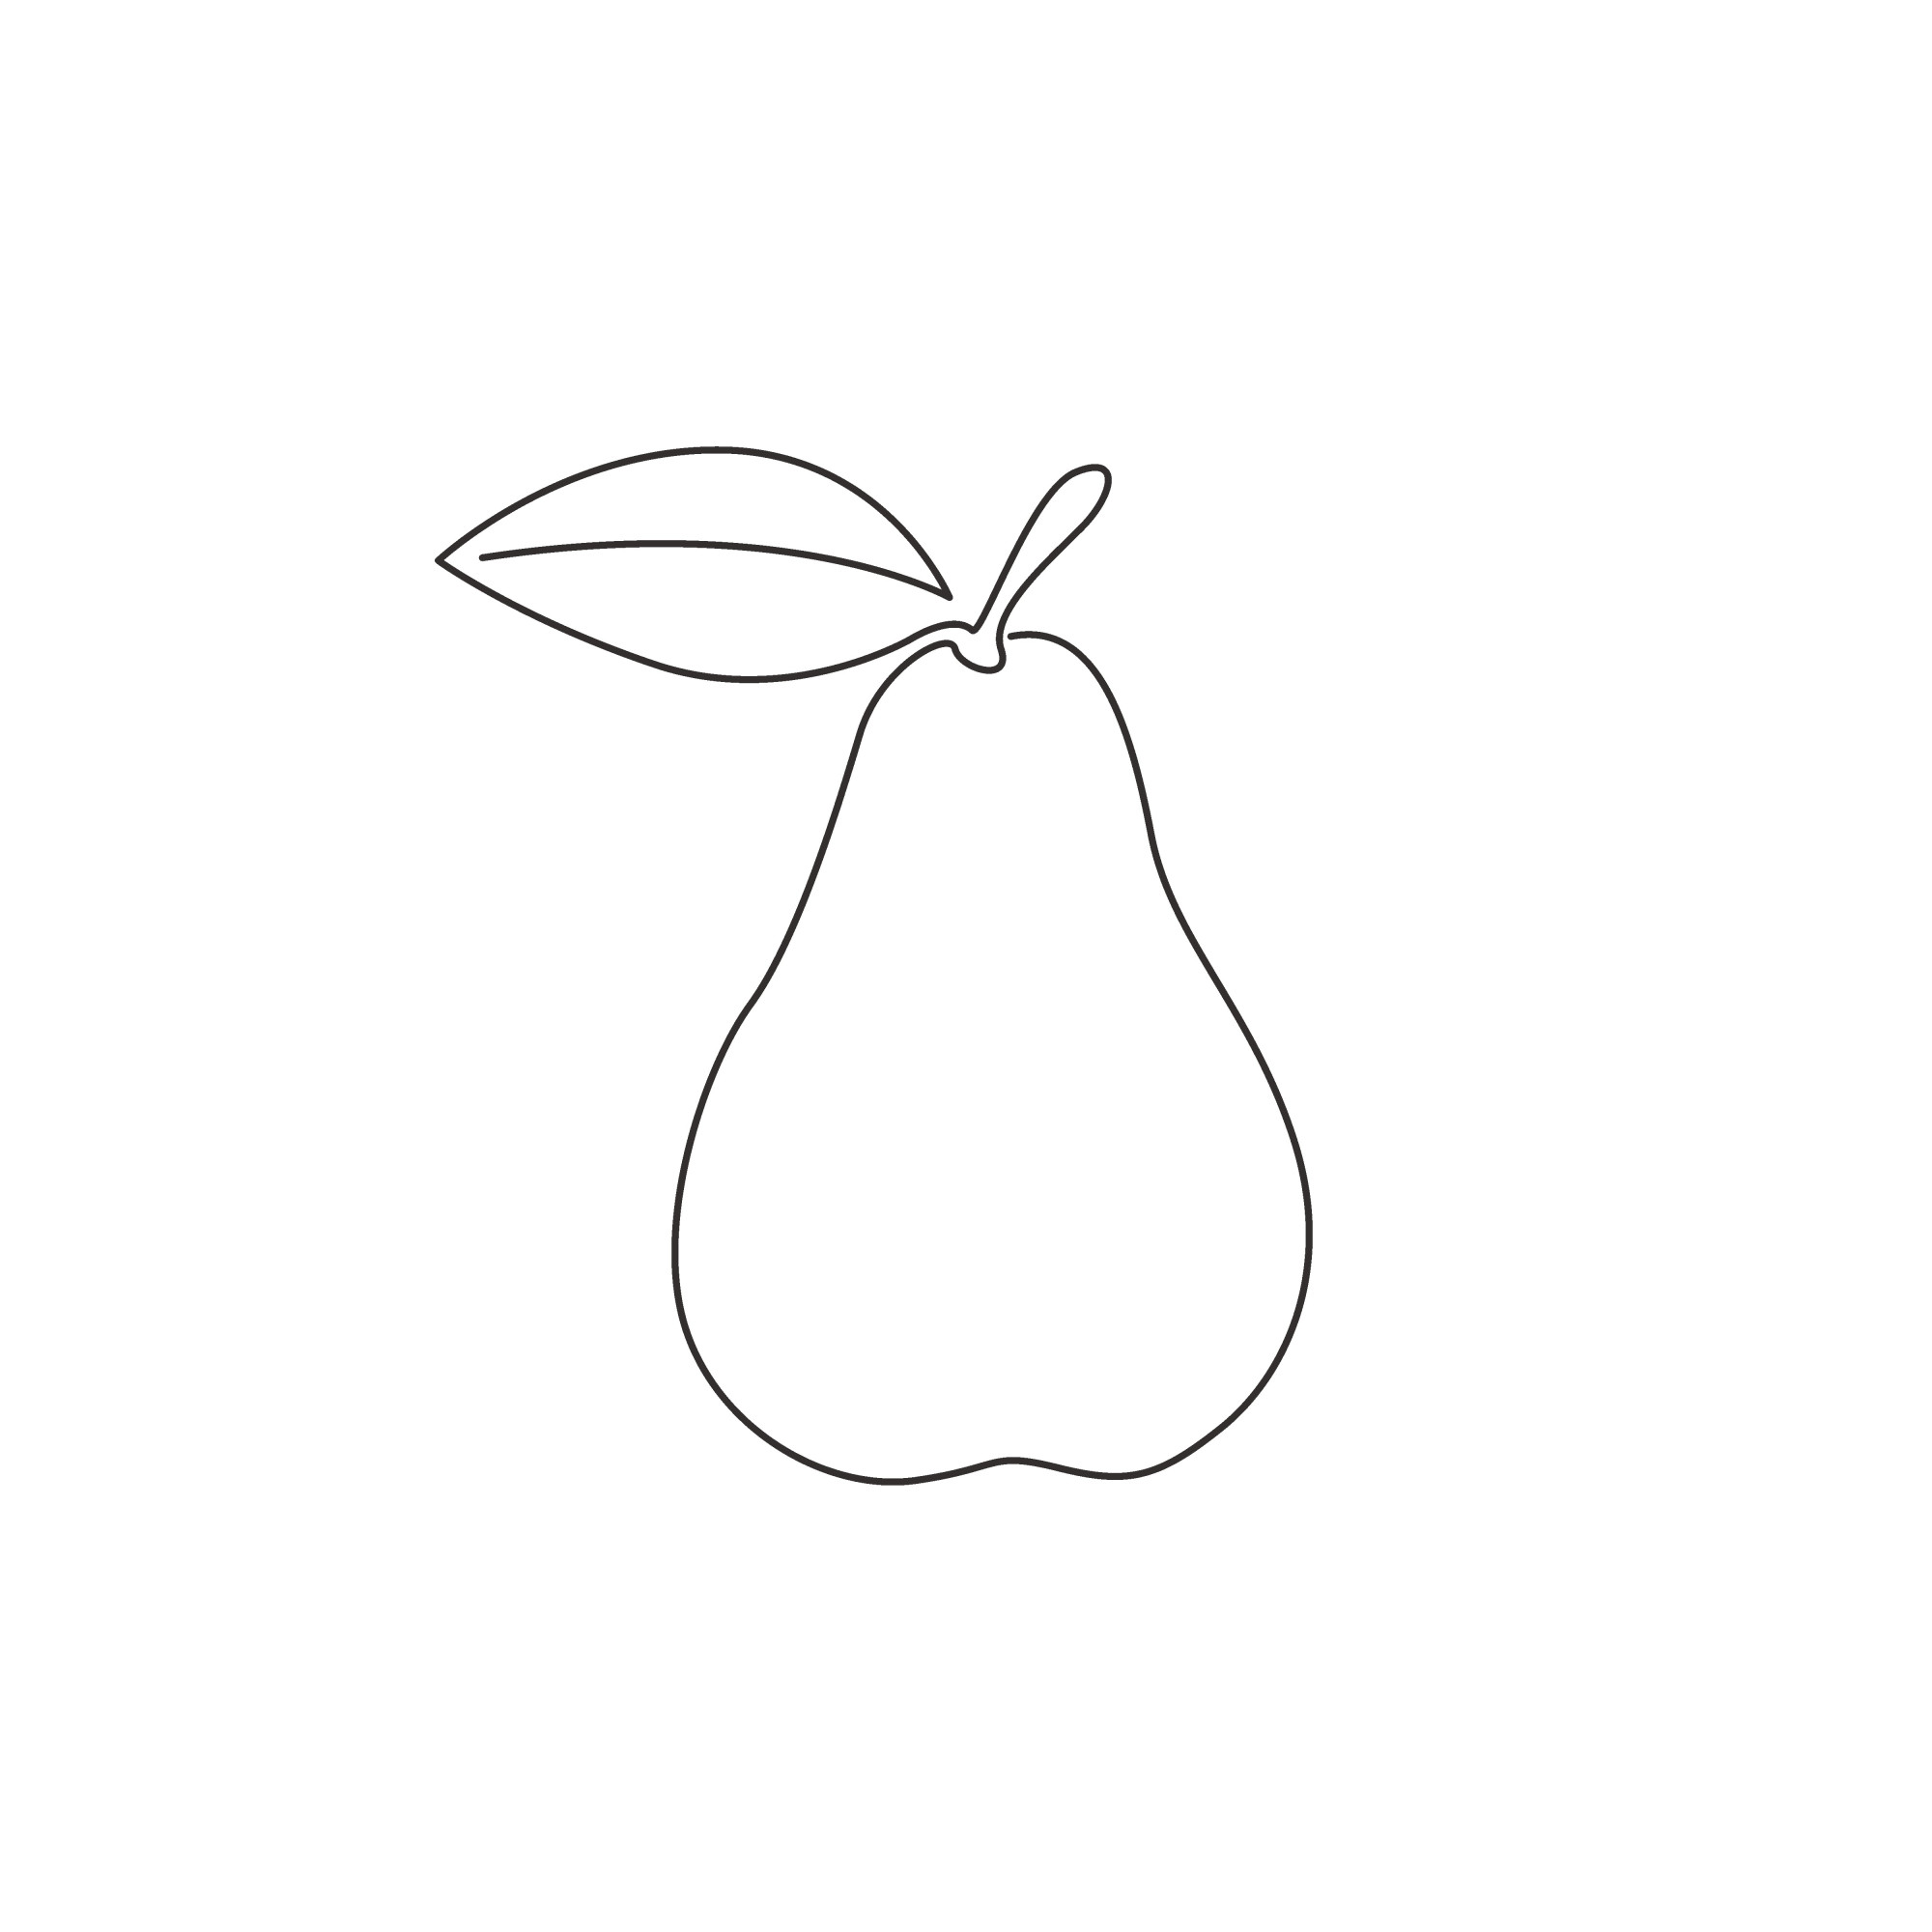 Раскраска для детей: контур фрукта груша